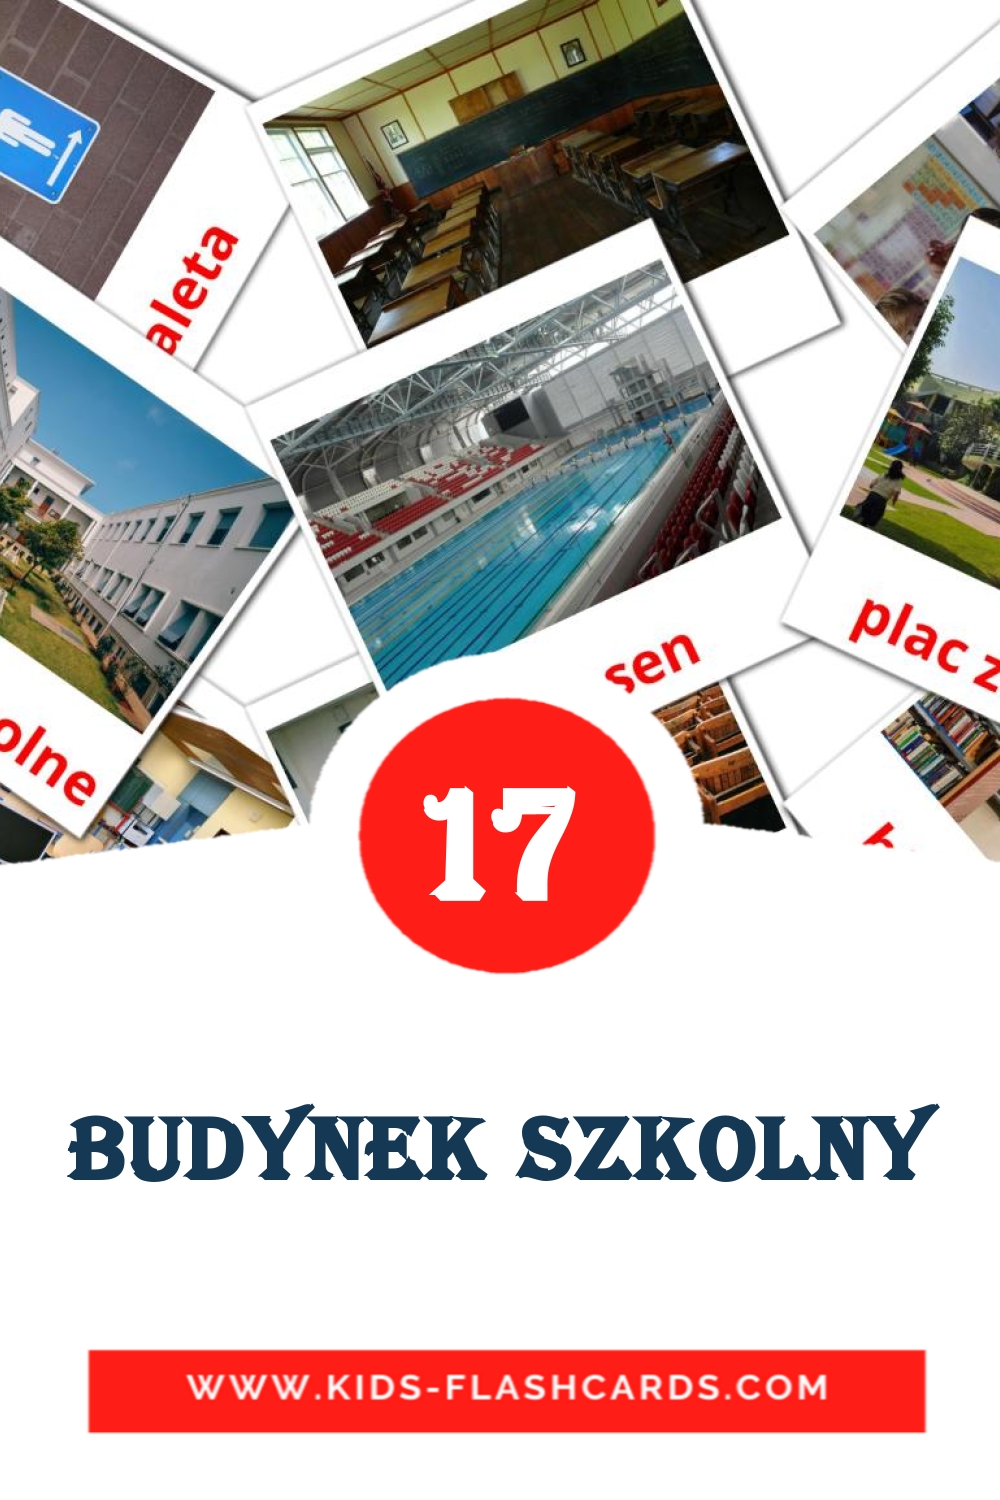 17 tarjetas didacticas de Budynek szkolny para el jardín de infancia en polaco